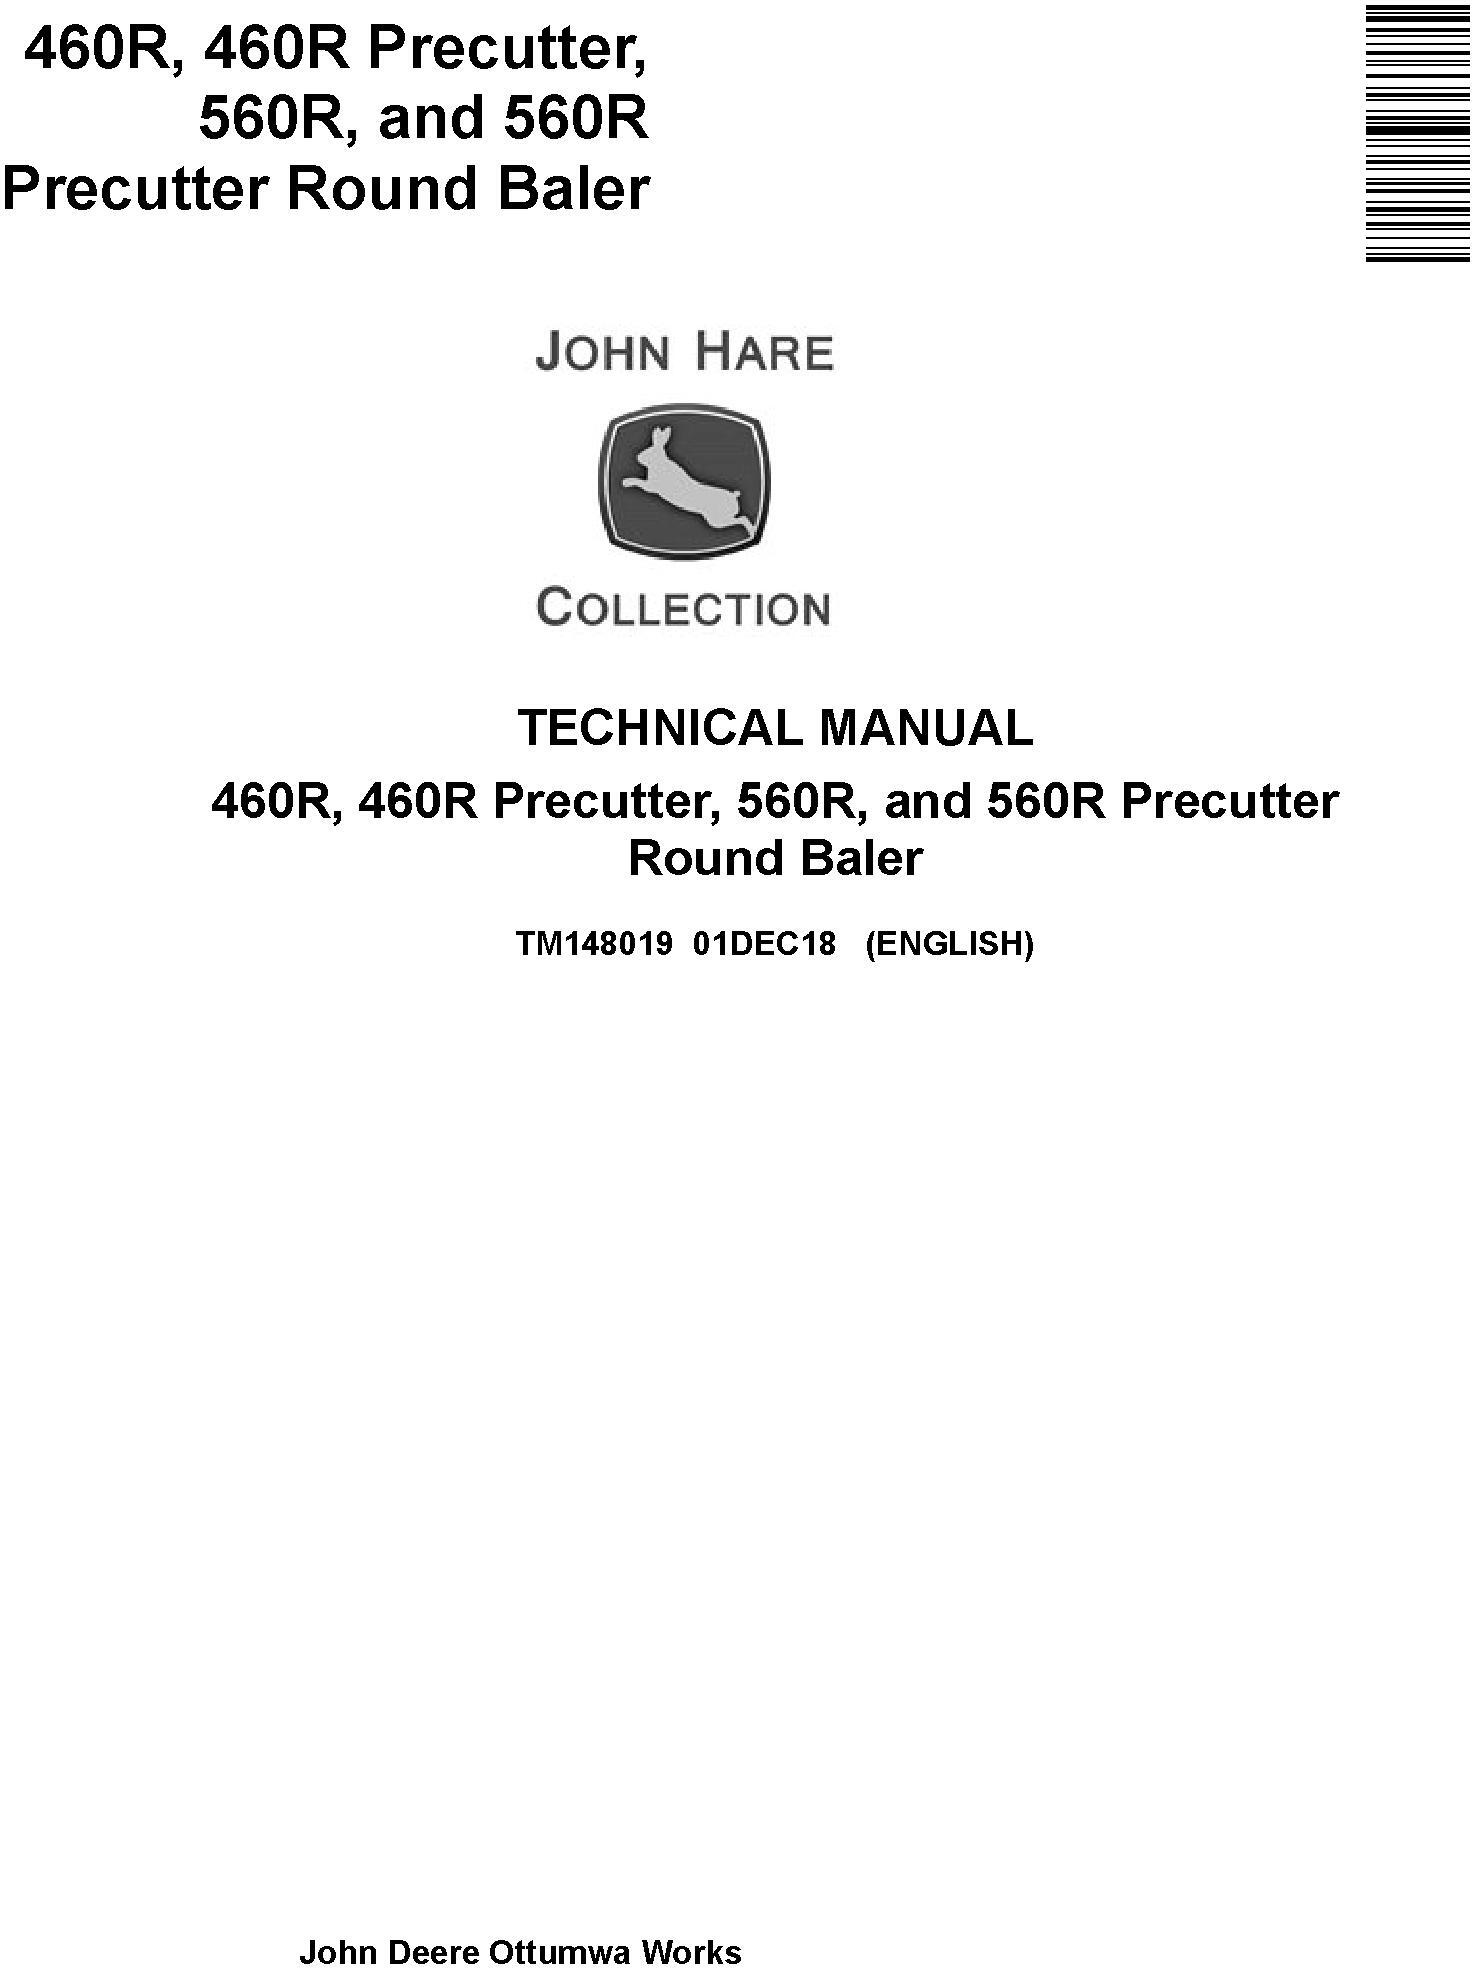 John Deere 460R, 460R Precutter, 560R, and 560R Precutter Round Baler Technical Manual (TM148019)